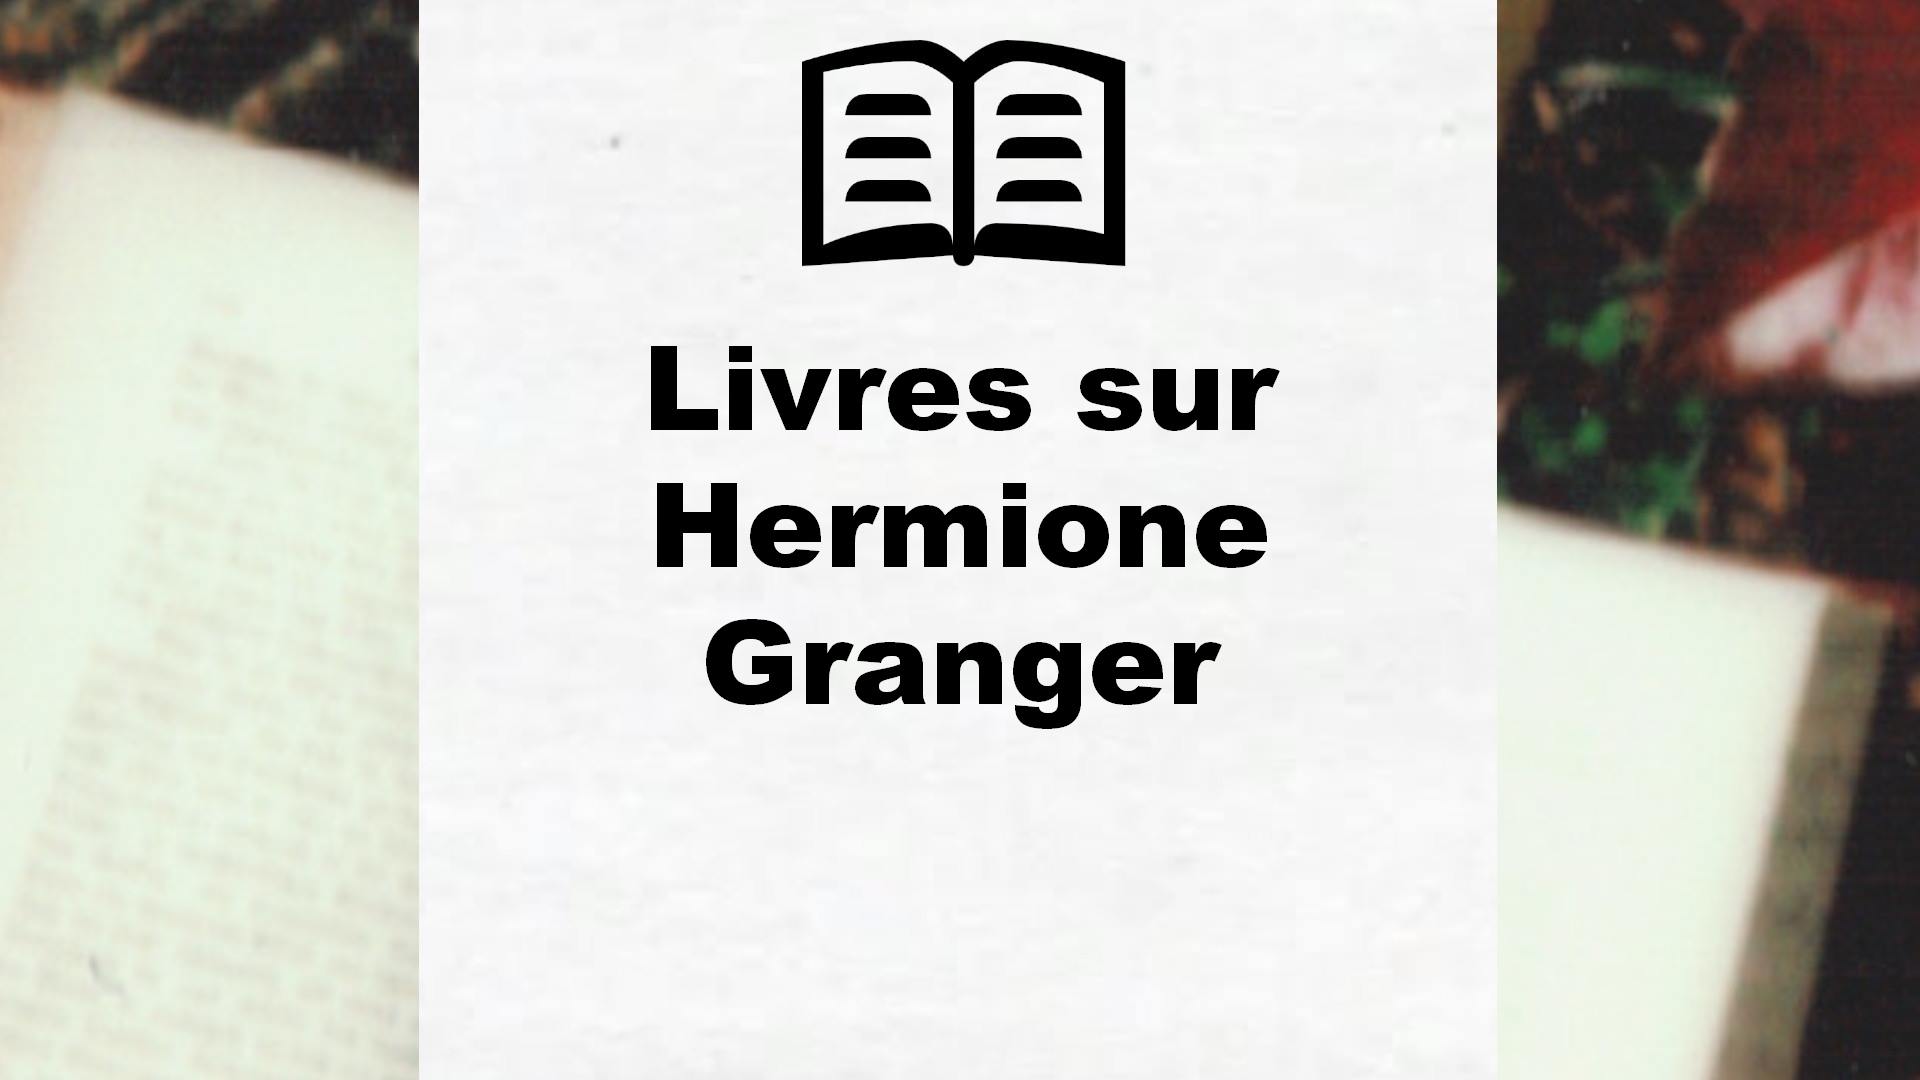 Livres sur Hermione Granger